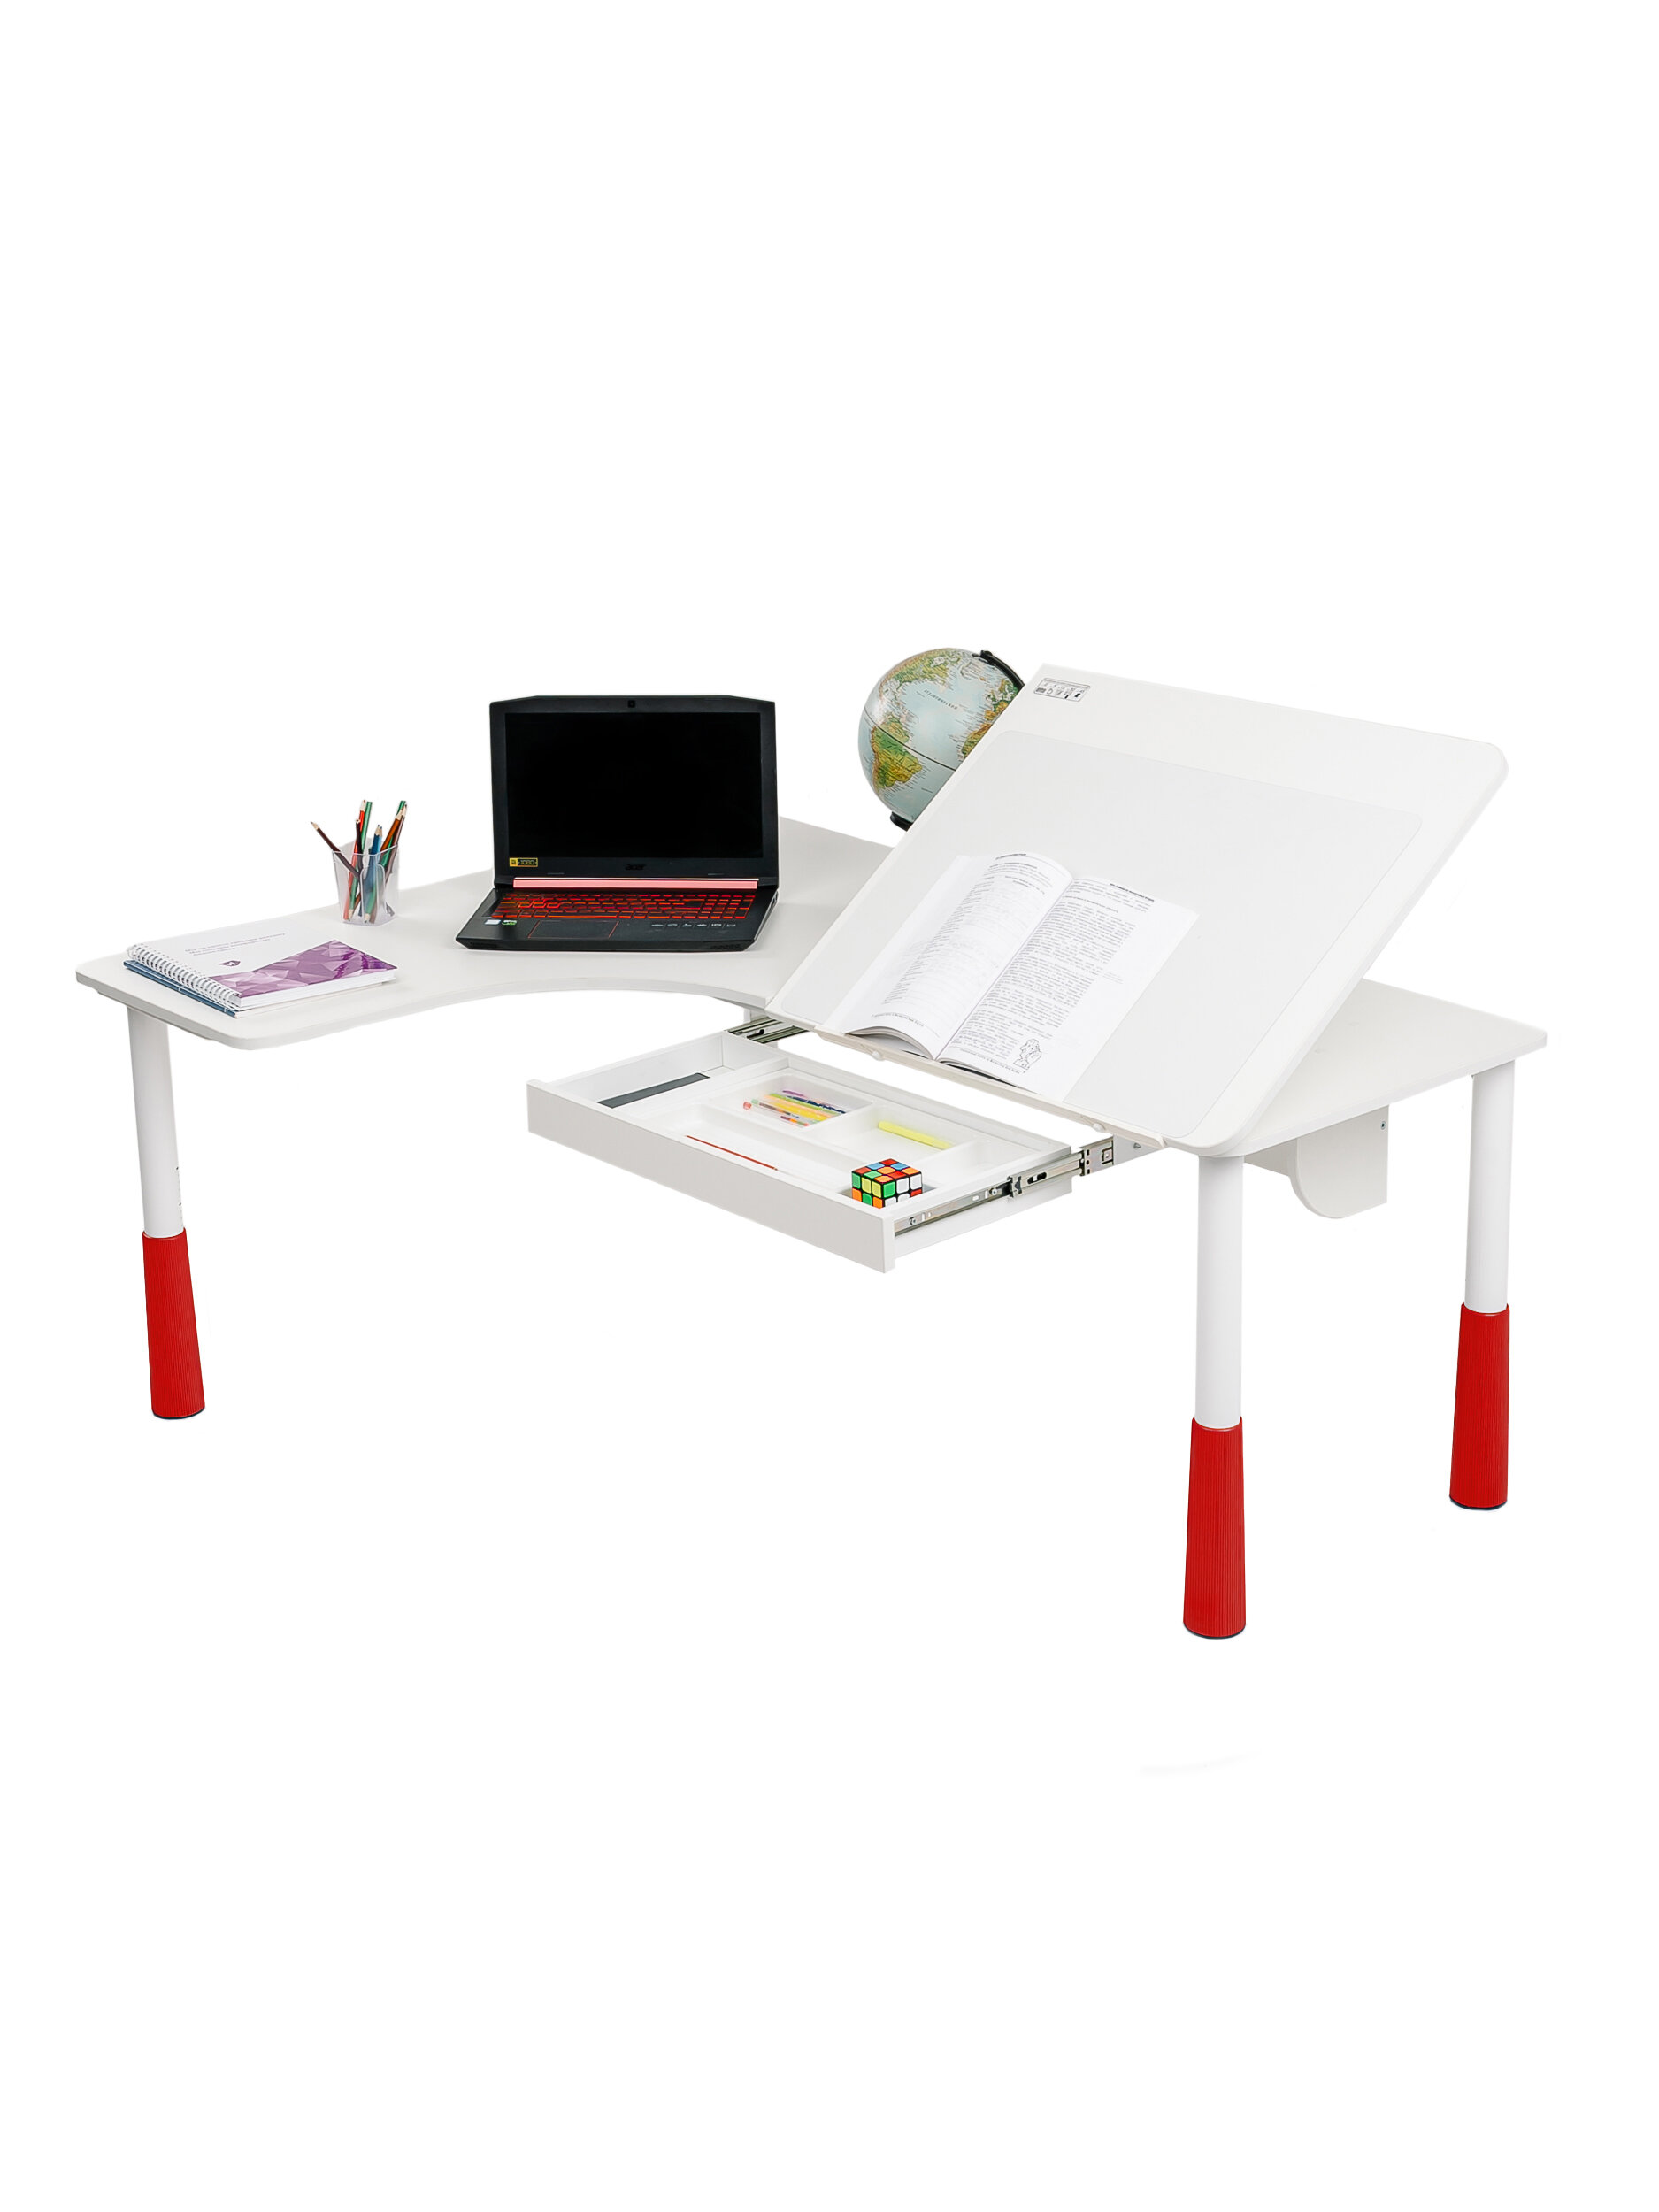 Компьютерный стол угловой Астек большой с выдвижным ящиком 115х150см цвет: белый/красный - фотография № 1